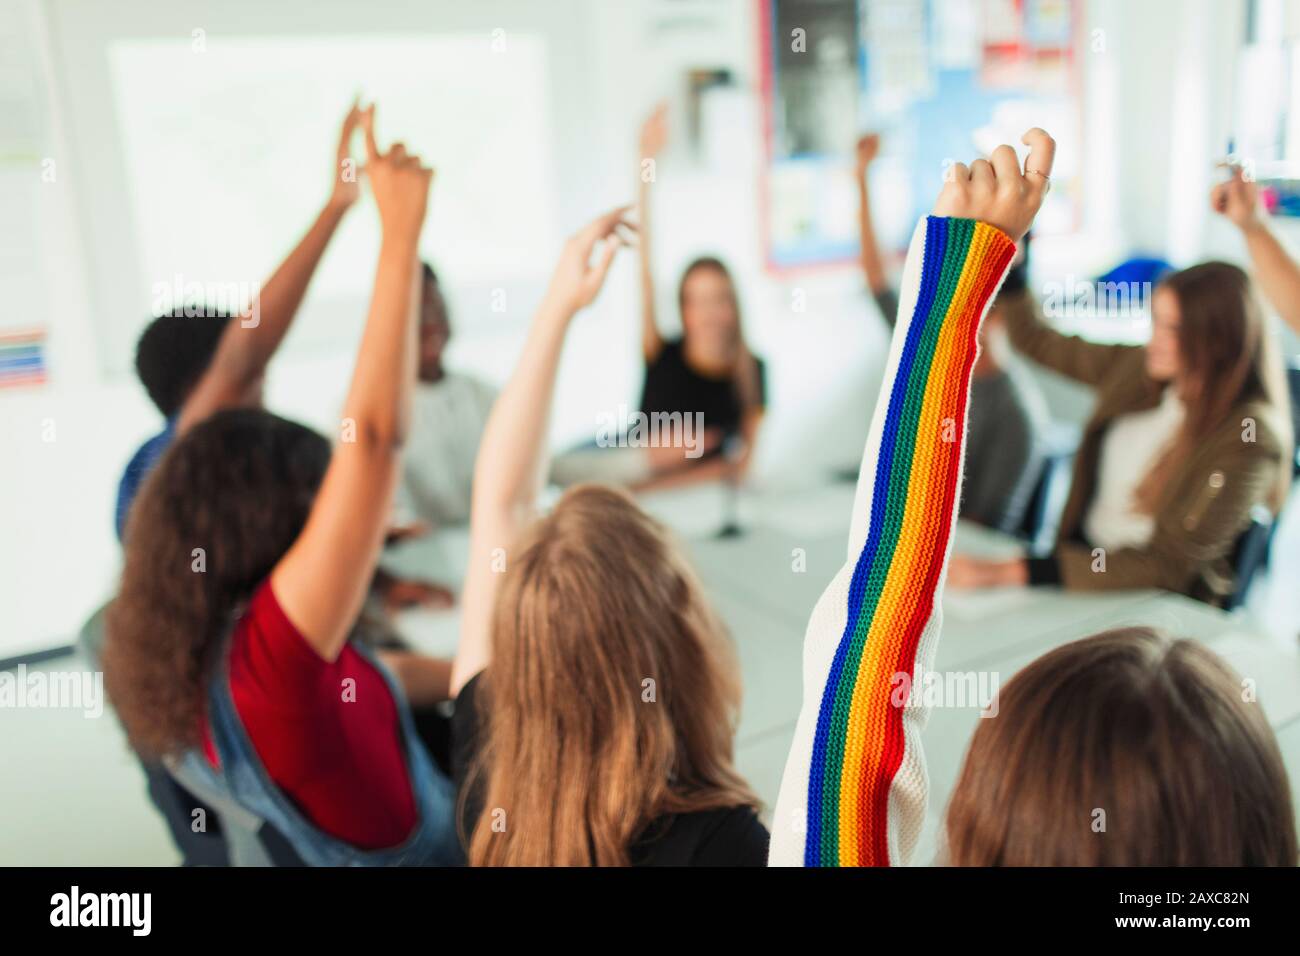 Gli studenti delle scuole superiori con le braccia alzate, ponendo domande in classe Foto Stock